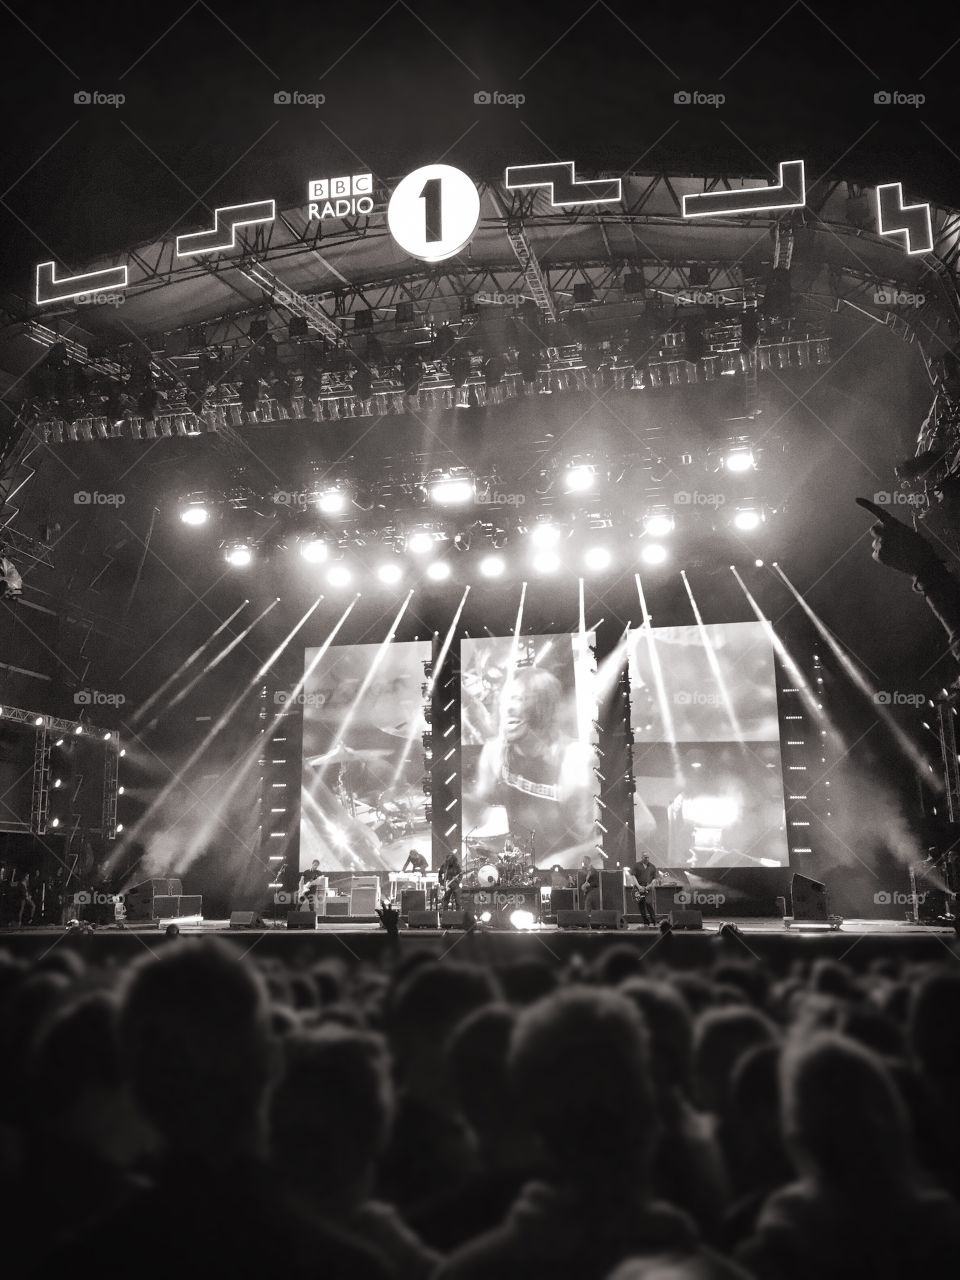 Foo Fighters at BBC Radio 1's Big Weekend